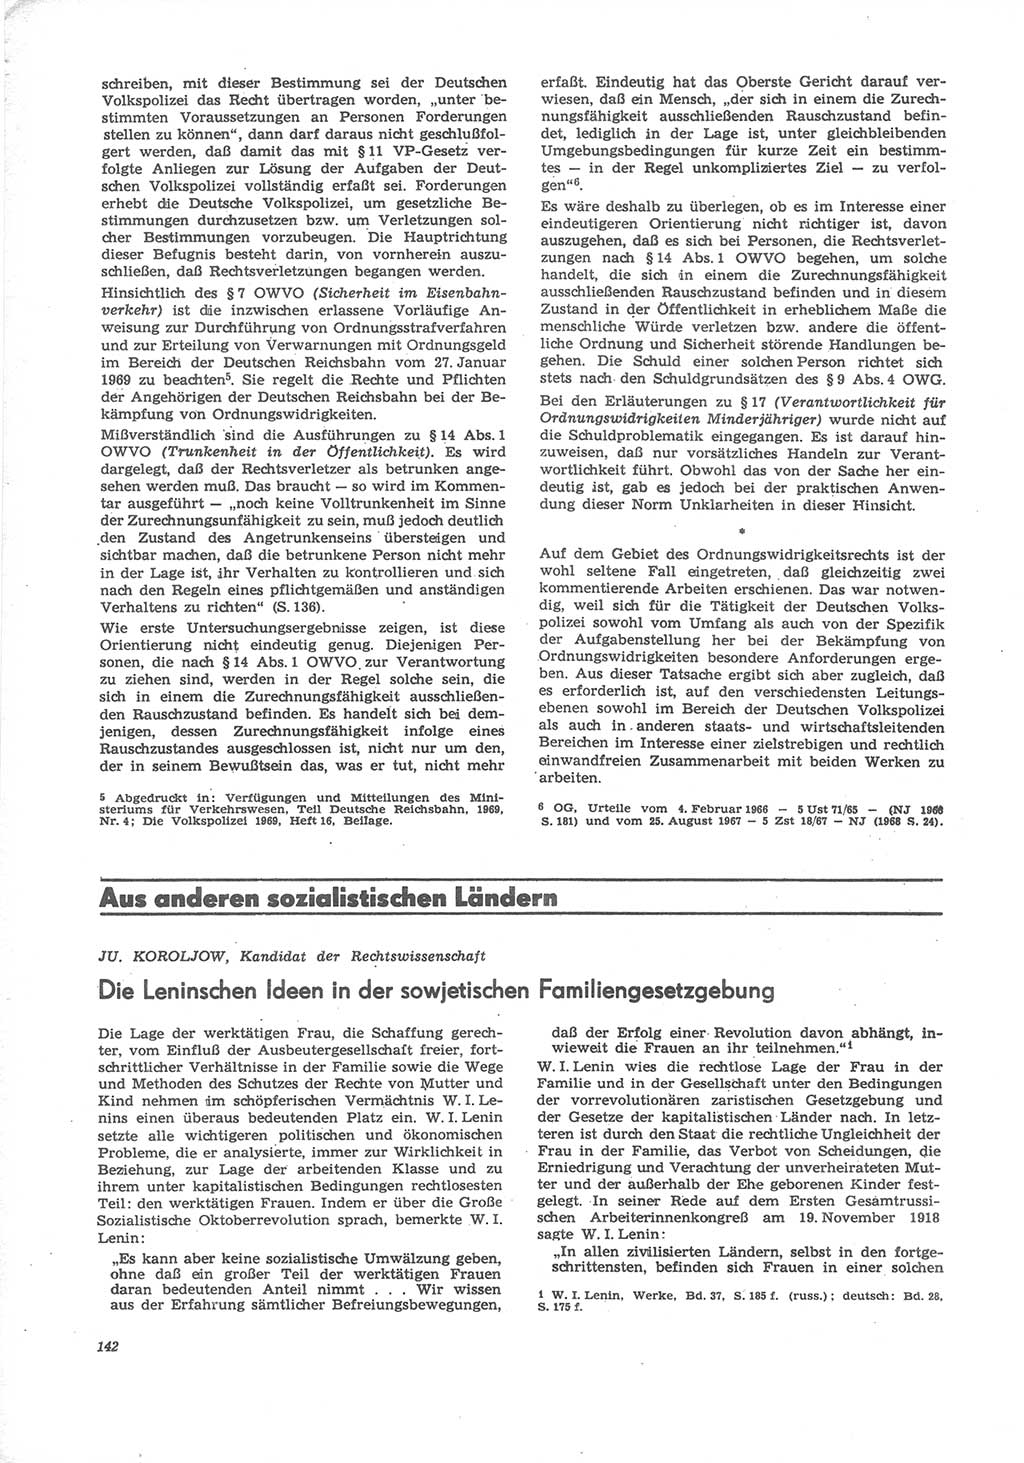 Neue Justiz (NJ), Zeitschrift für Recht und Rechtswissenschaft [Deutsche Demokratische Republik (DDR)], 24. Jahrgang 1970, Seite 142 (NJ DDR 1970, S. 142)